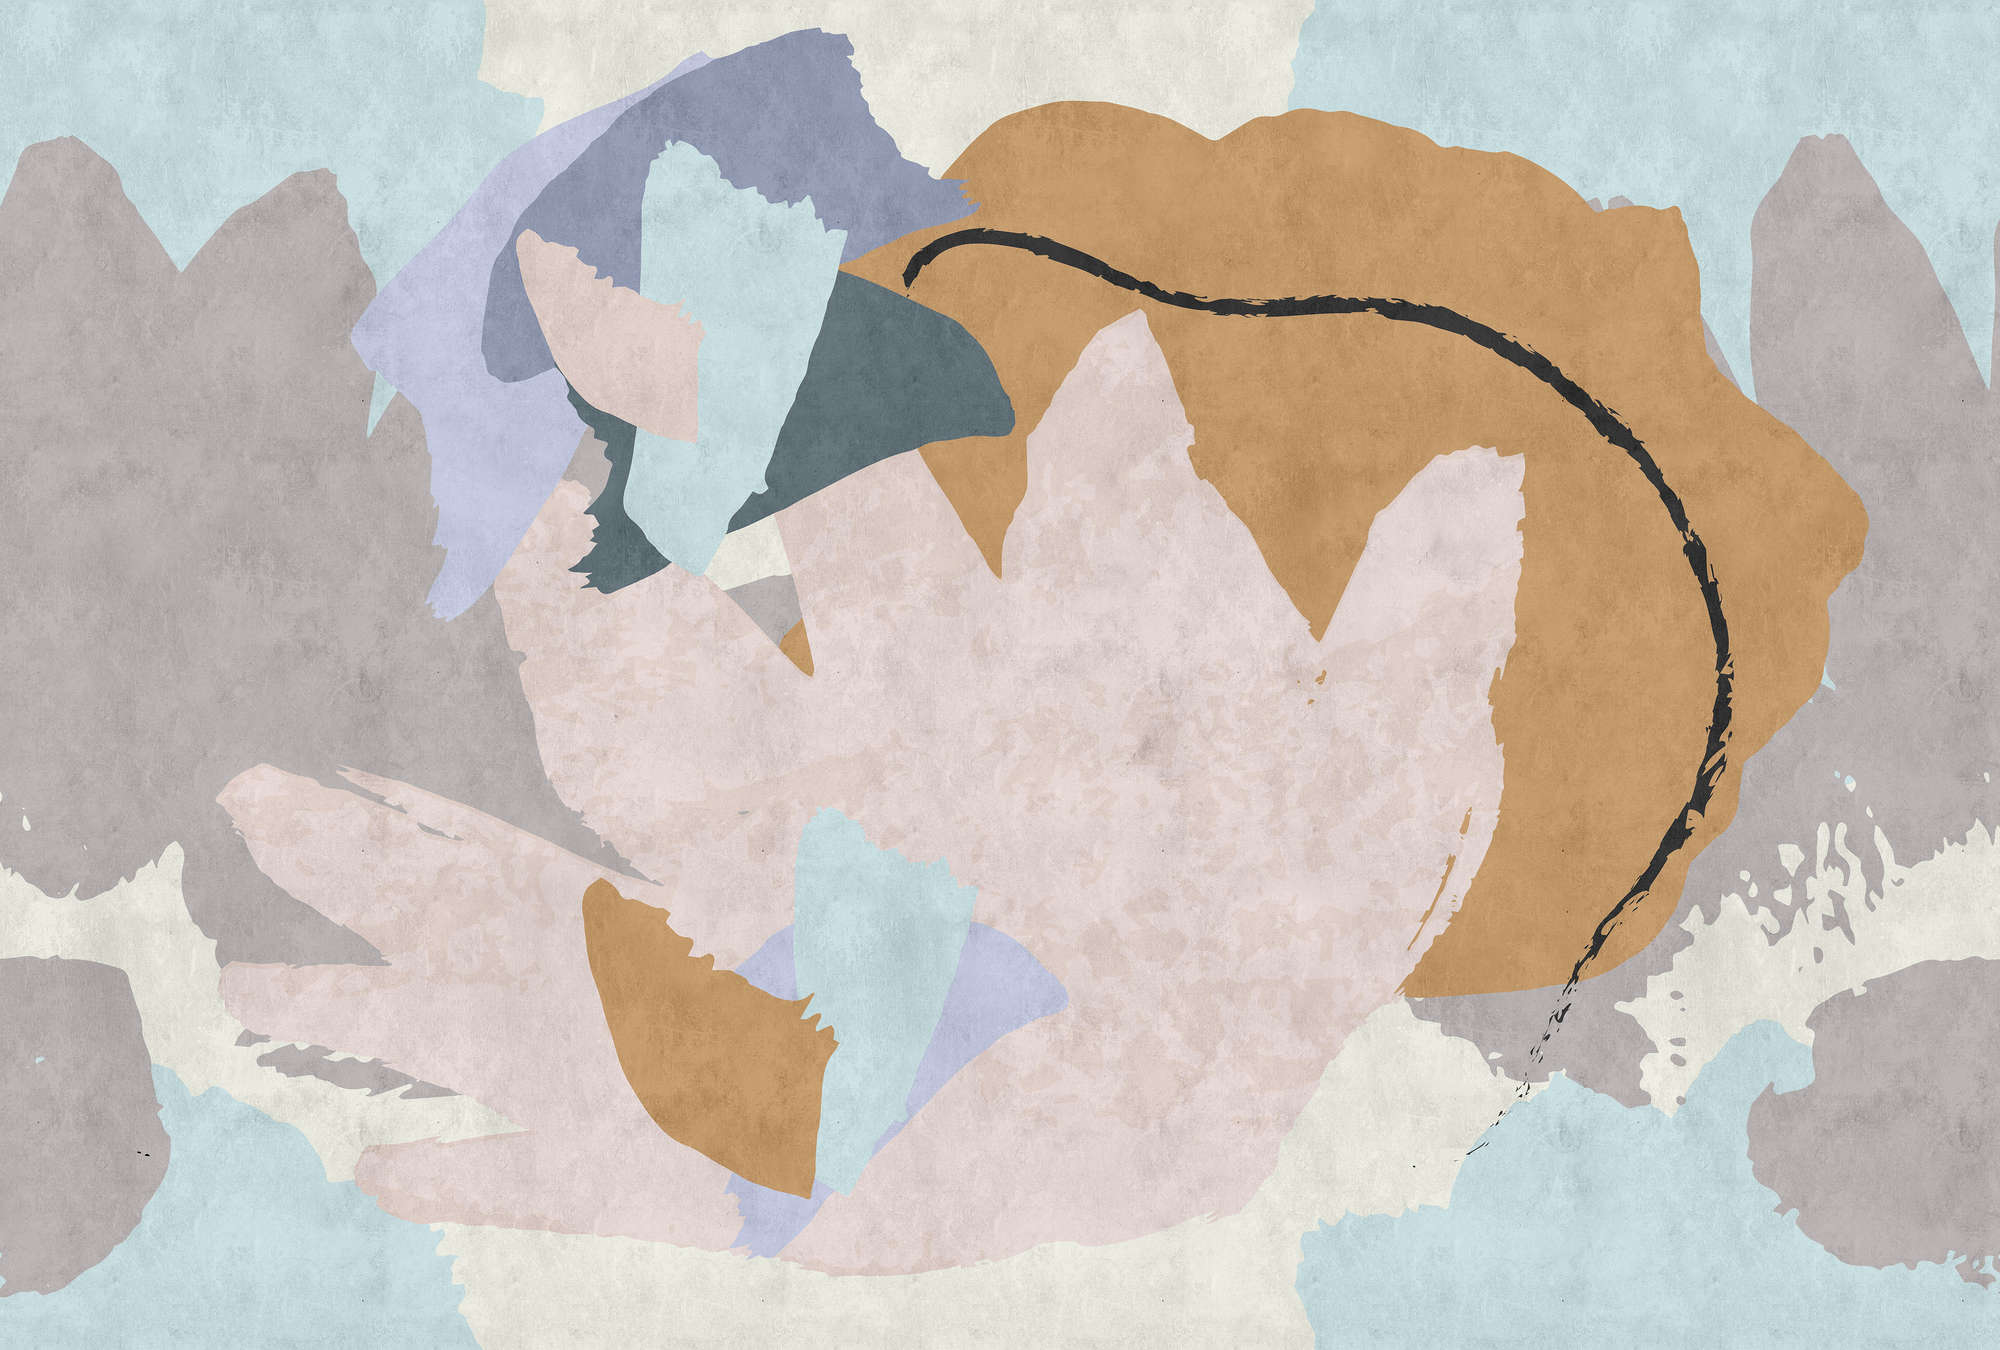             Collage Floral 2 - Papel Pintado Moderno Tipo Abstracto en Textura de Papel Secante - Azul, Crema | Perla Liso No Tejido
        